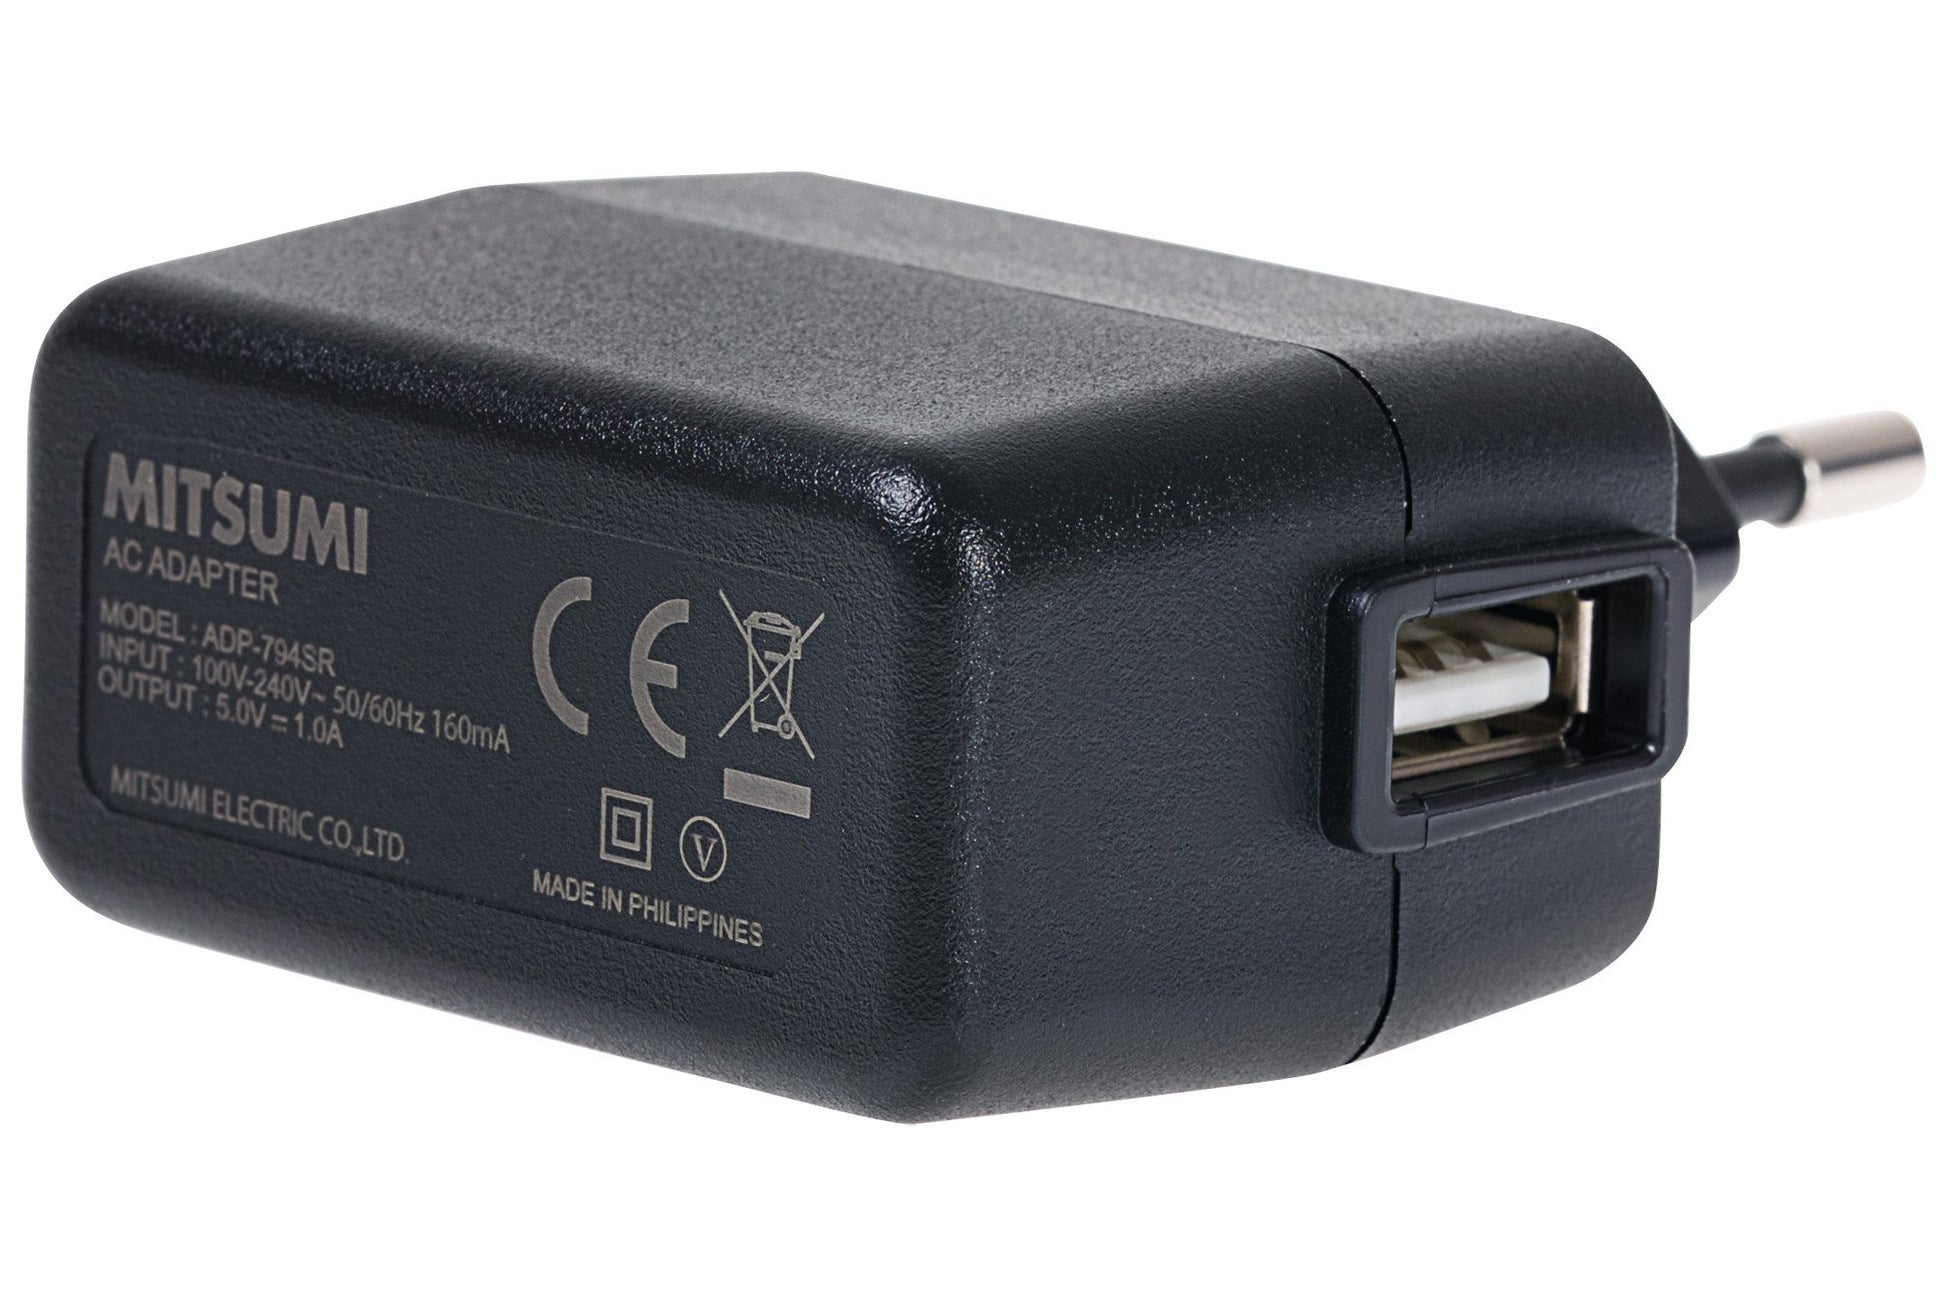 USB EU Power Adapter - Praktica